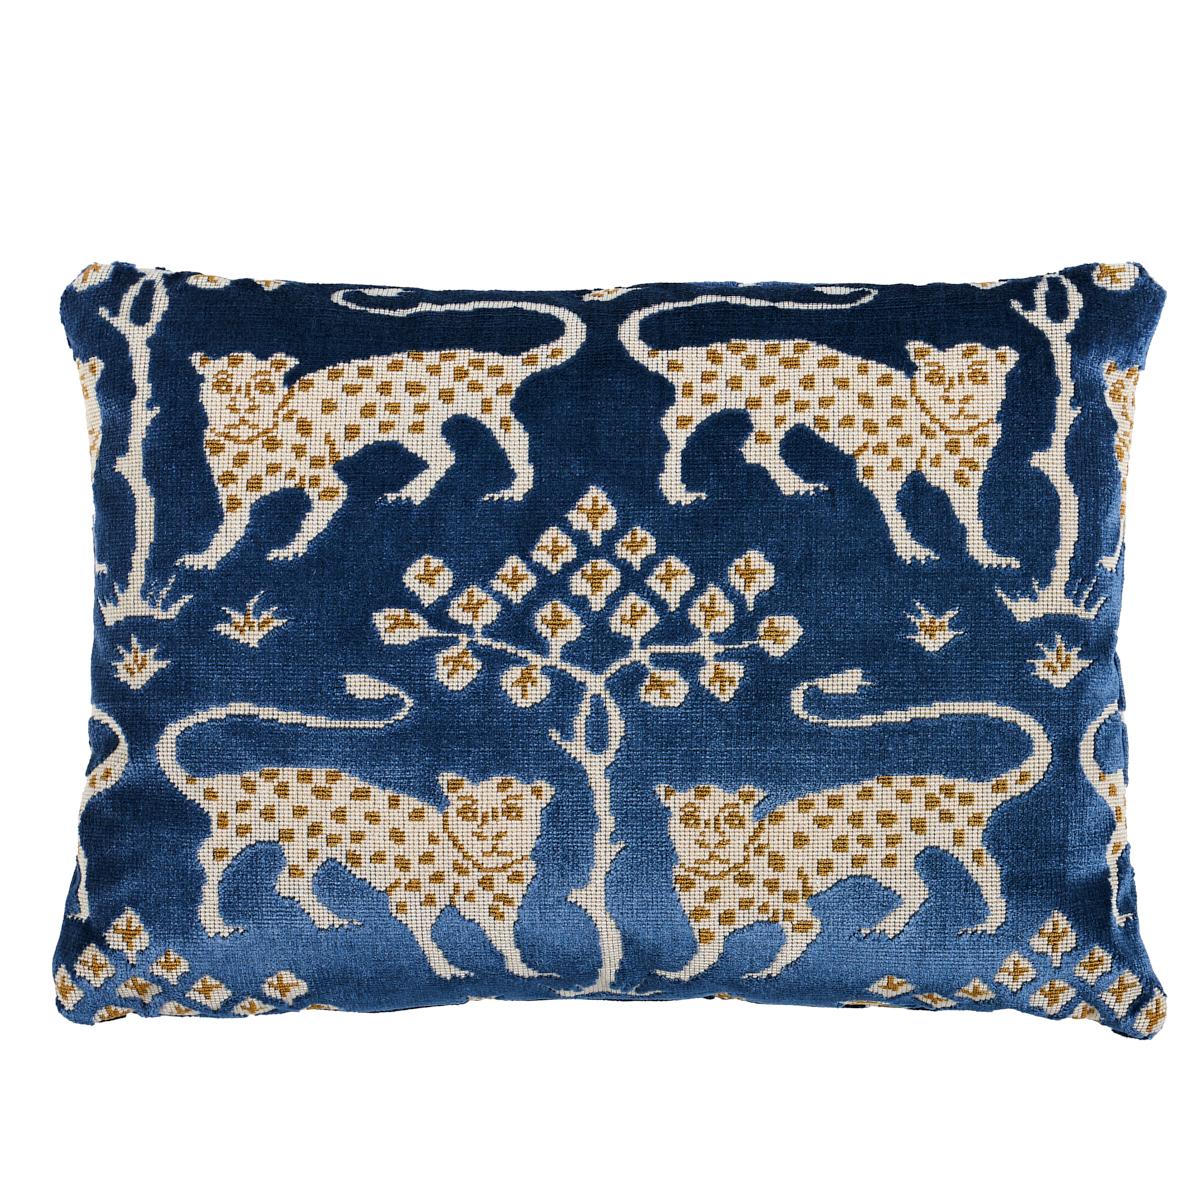 Shumacher Woodland Leopard Velvet 16x12" Pillow in Sapphire For Sale